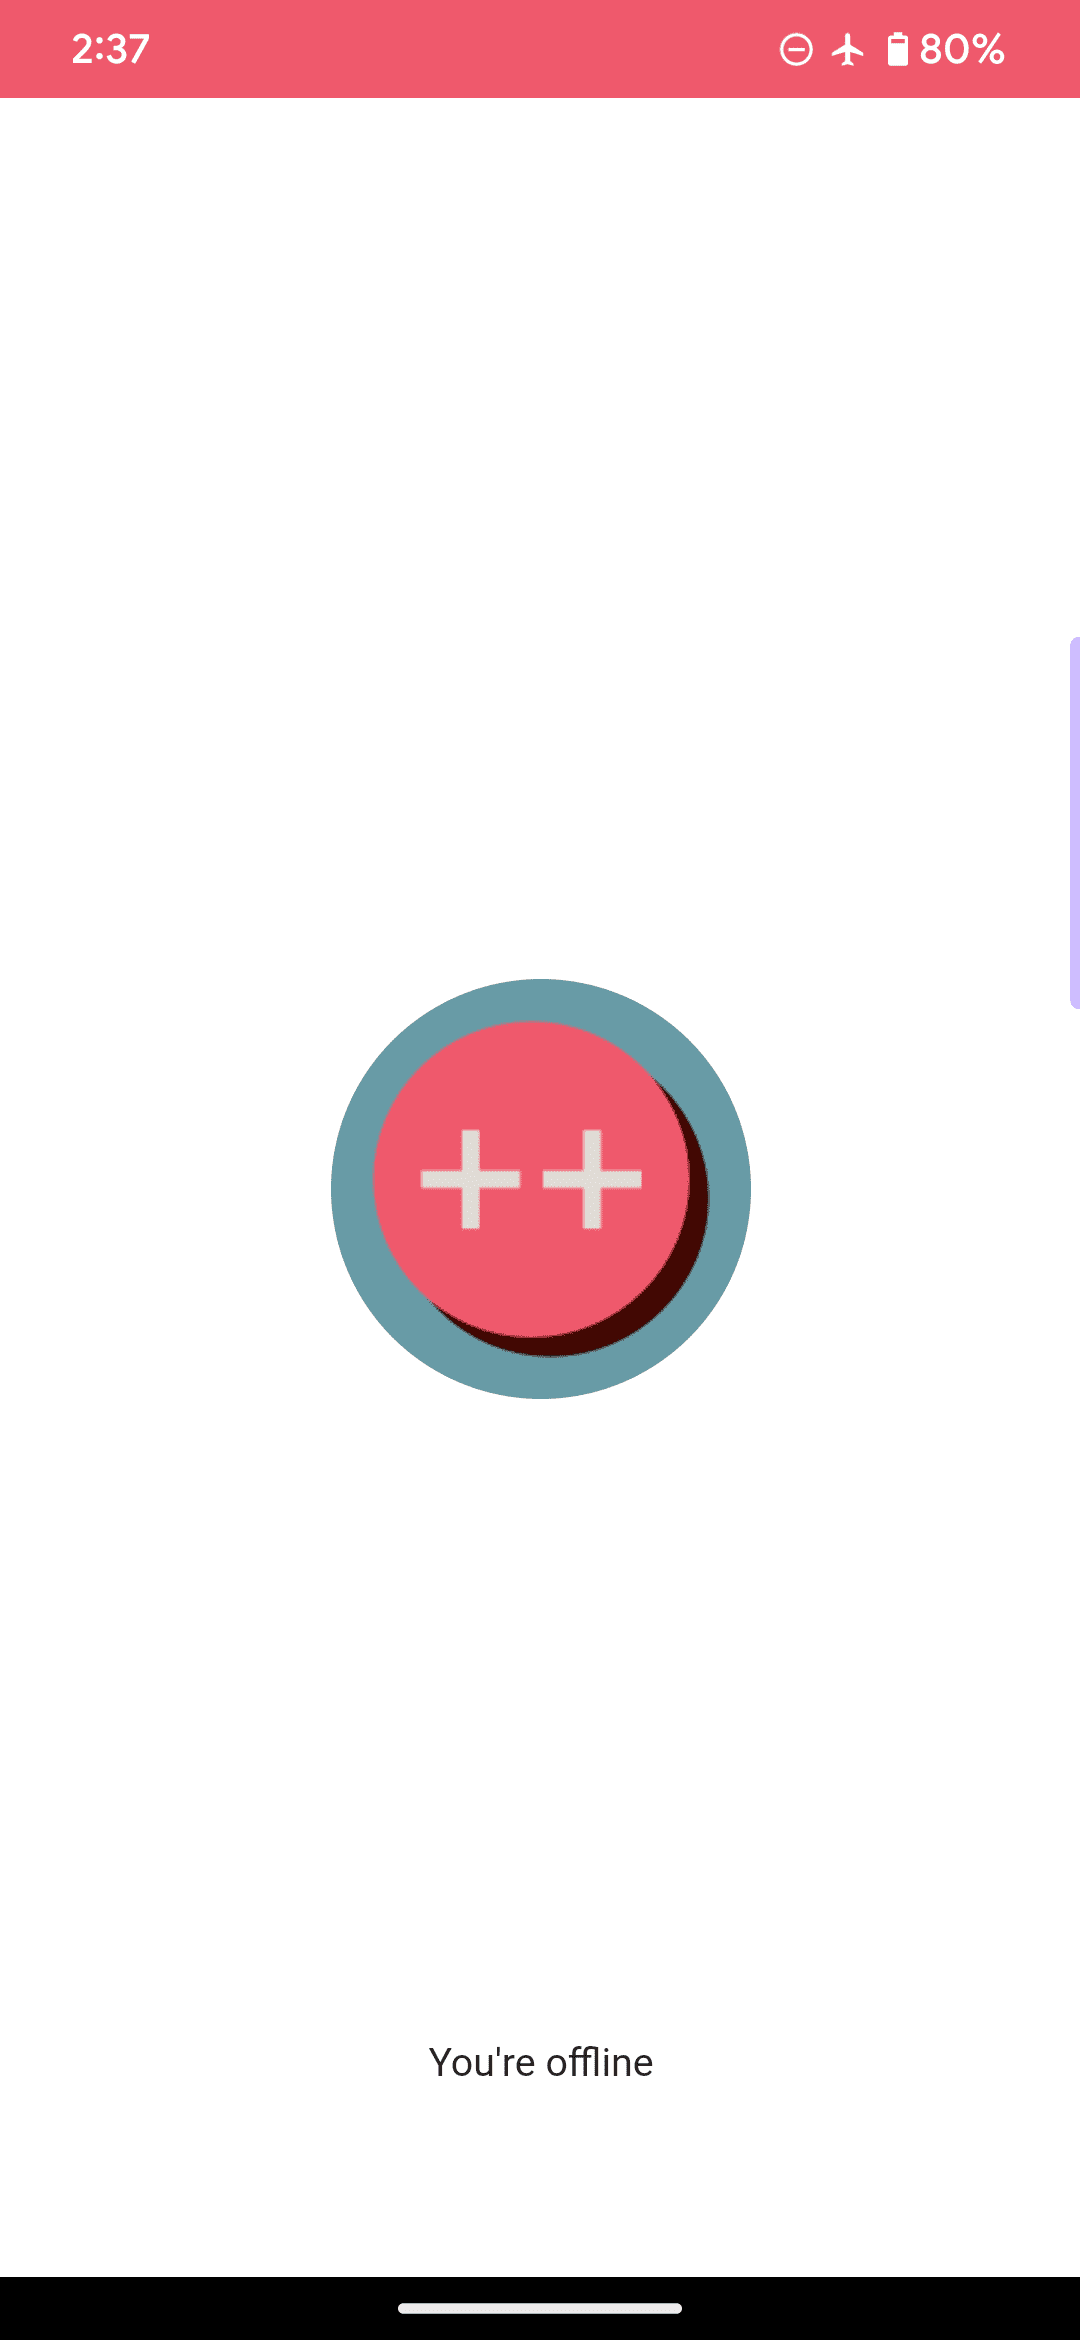 Автономная страница по умолчанию для примера веб-приложения, где логотип представляет собой розовый кружок и два знака плюса, а также включает сообщение «вы не в сети».